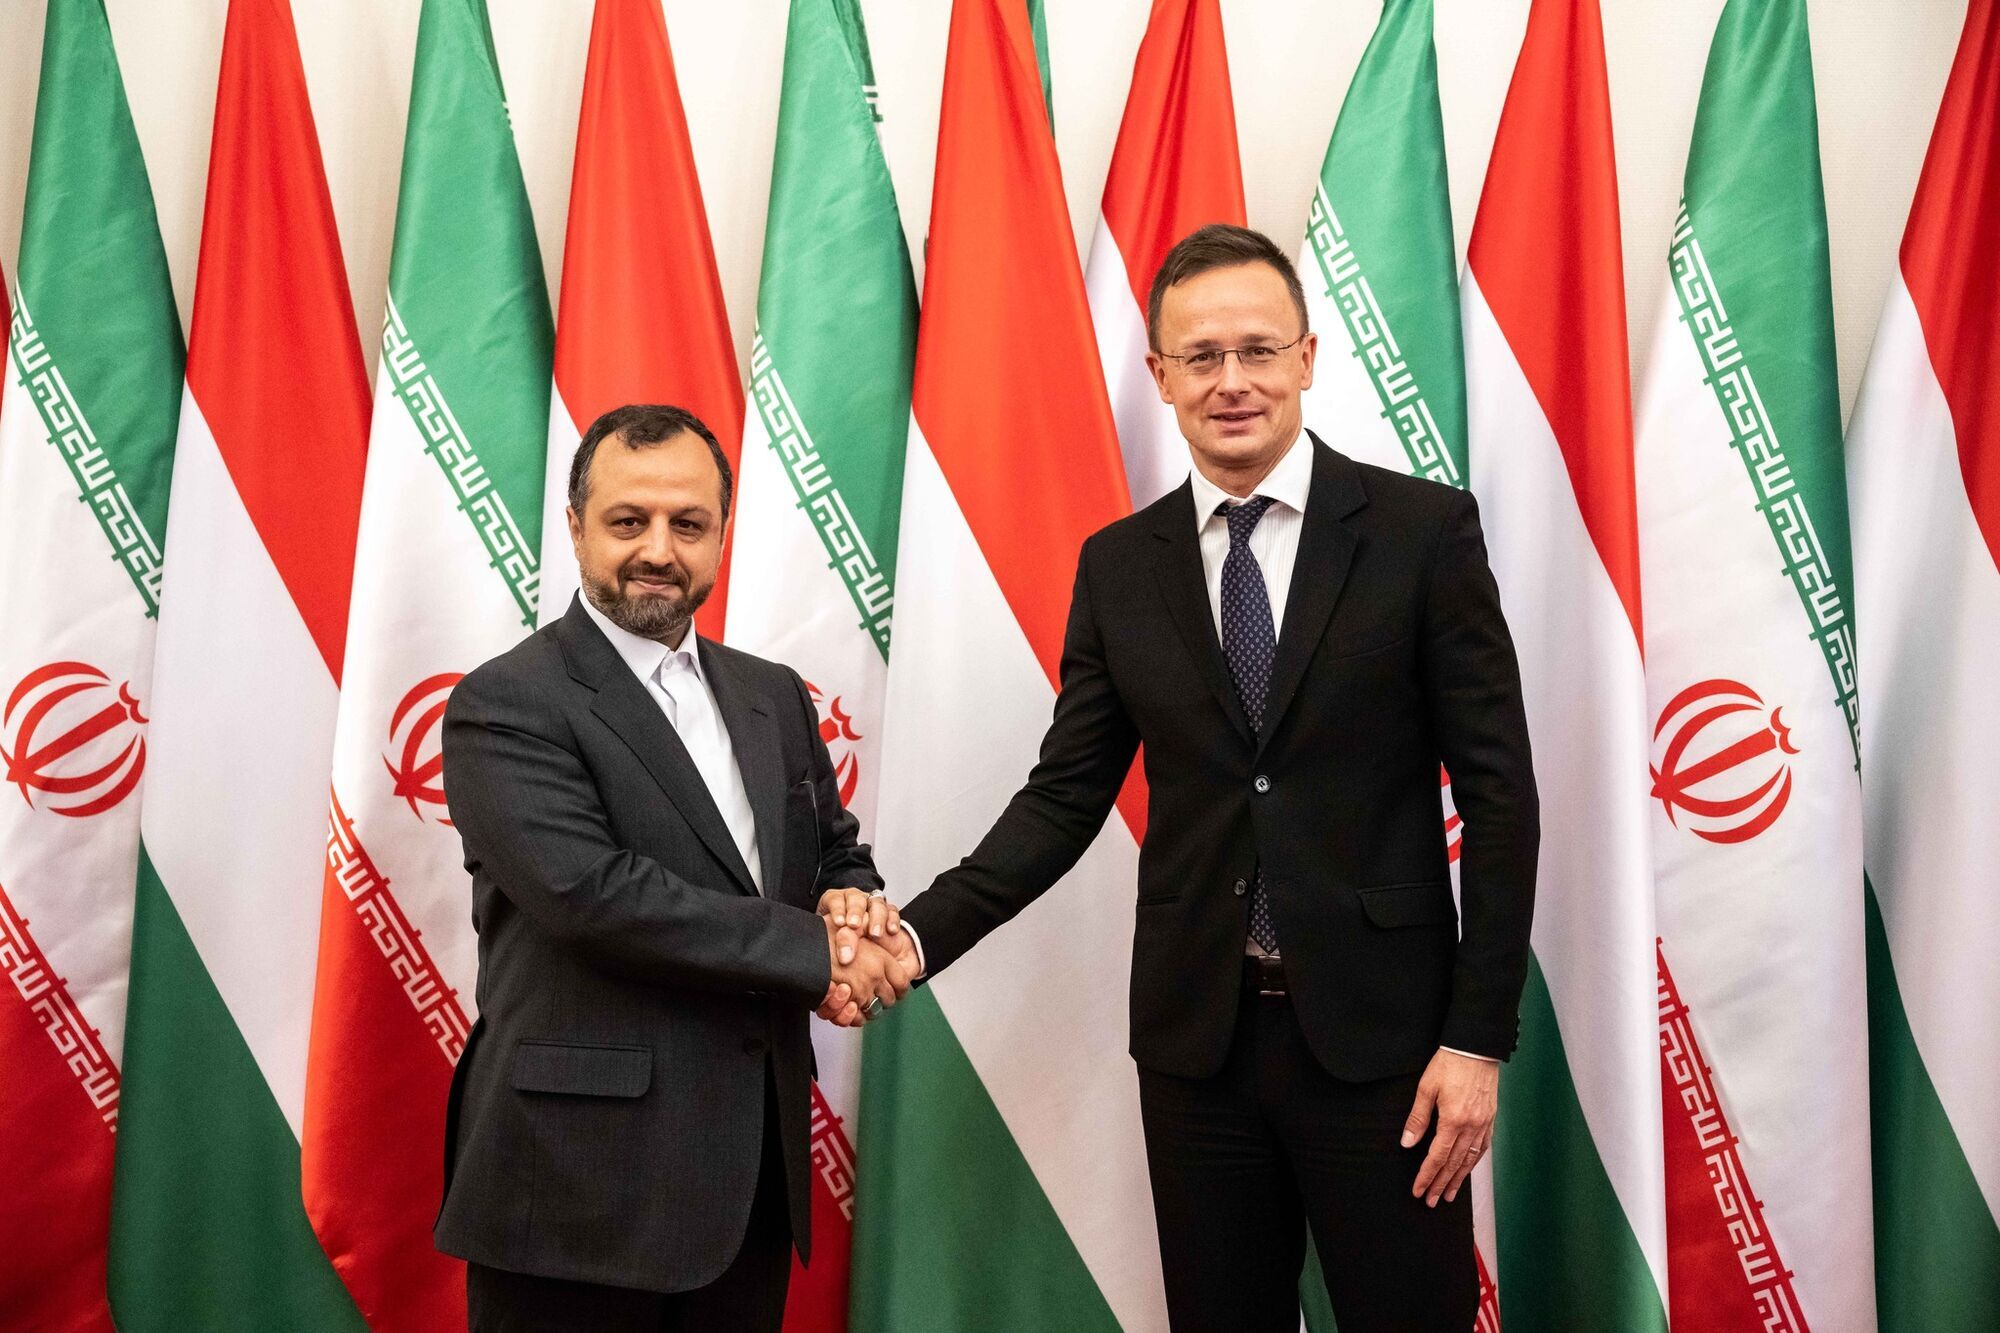 Угорщина офіційно оголосила про початок економічного співробітництва з Іраном 